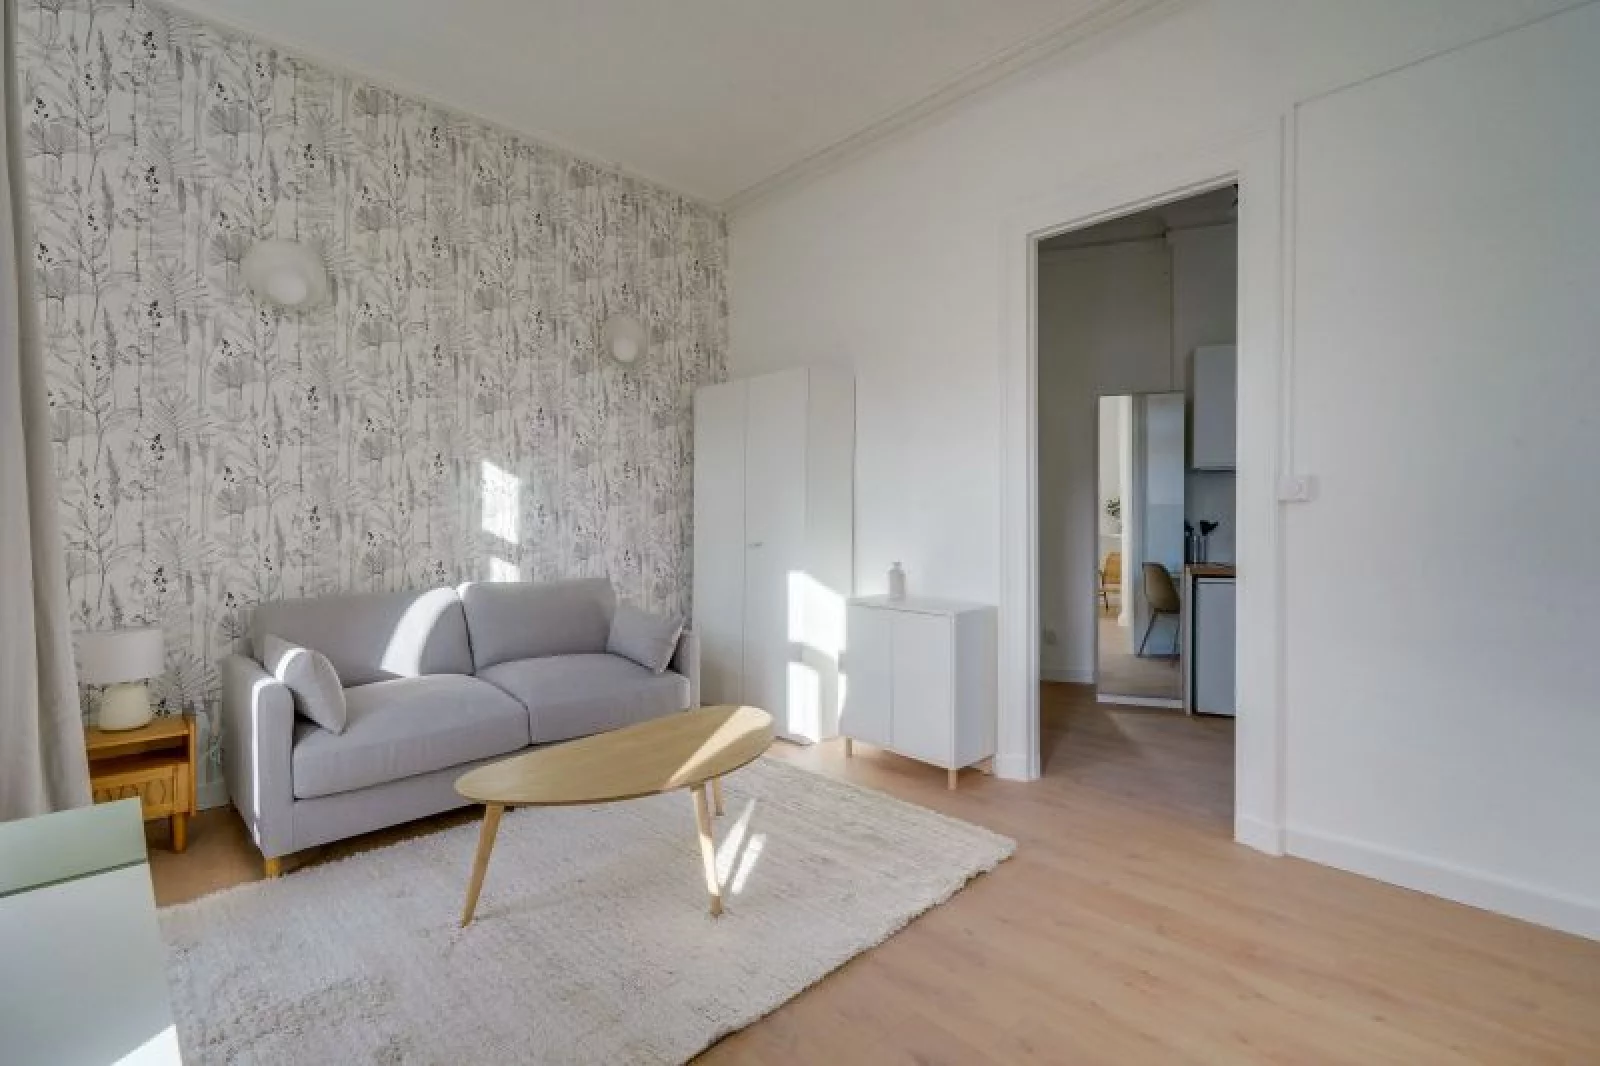 Location appartement meublé 1 pièce 29m² (Bordeaux sud/ Victoire - St Jean)